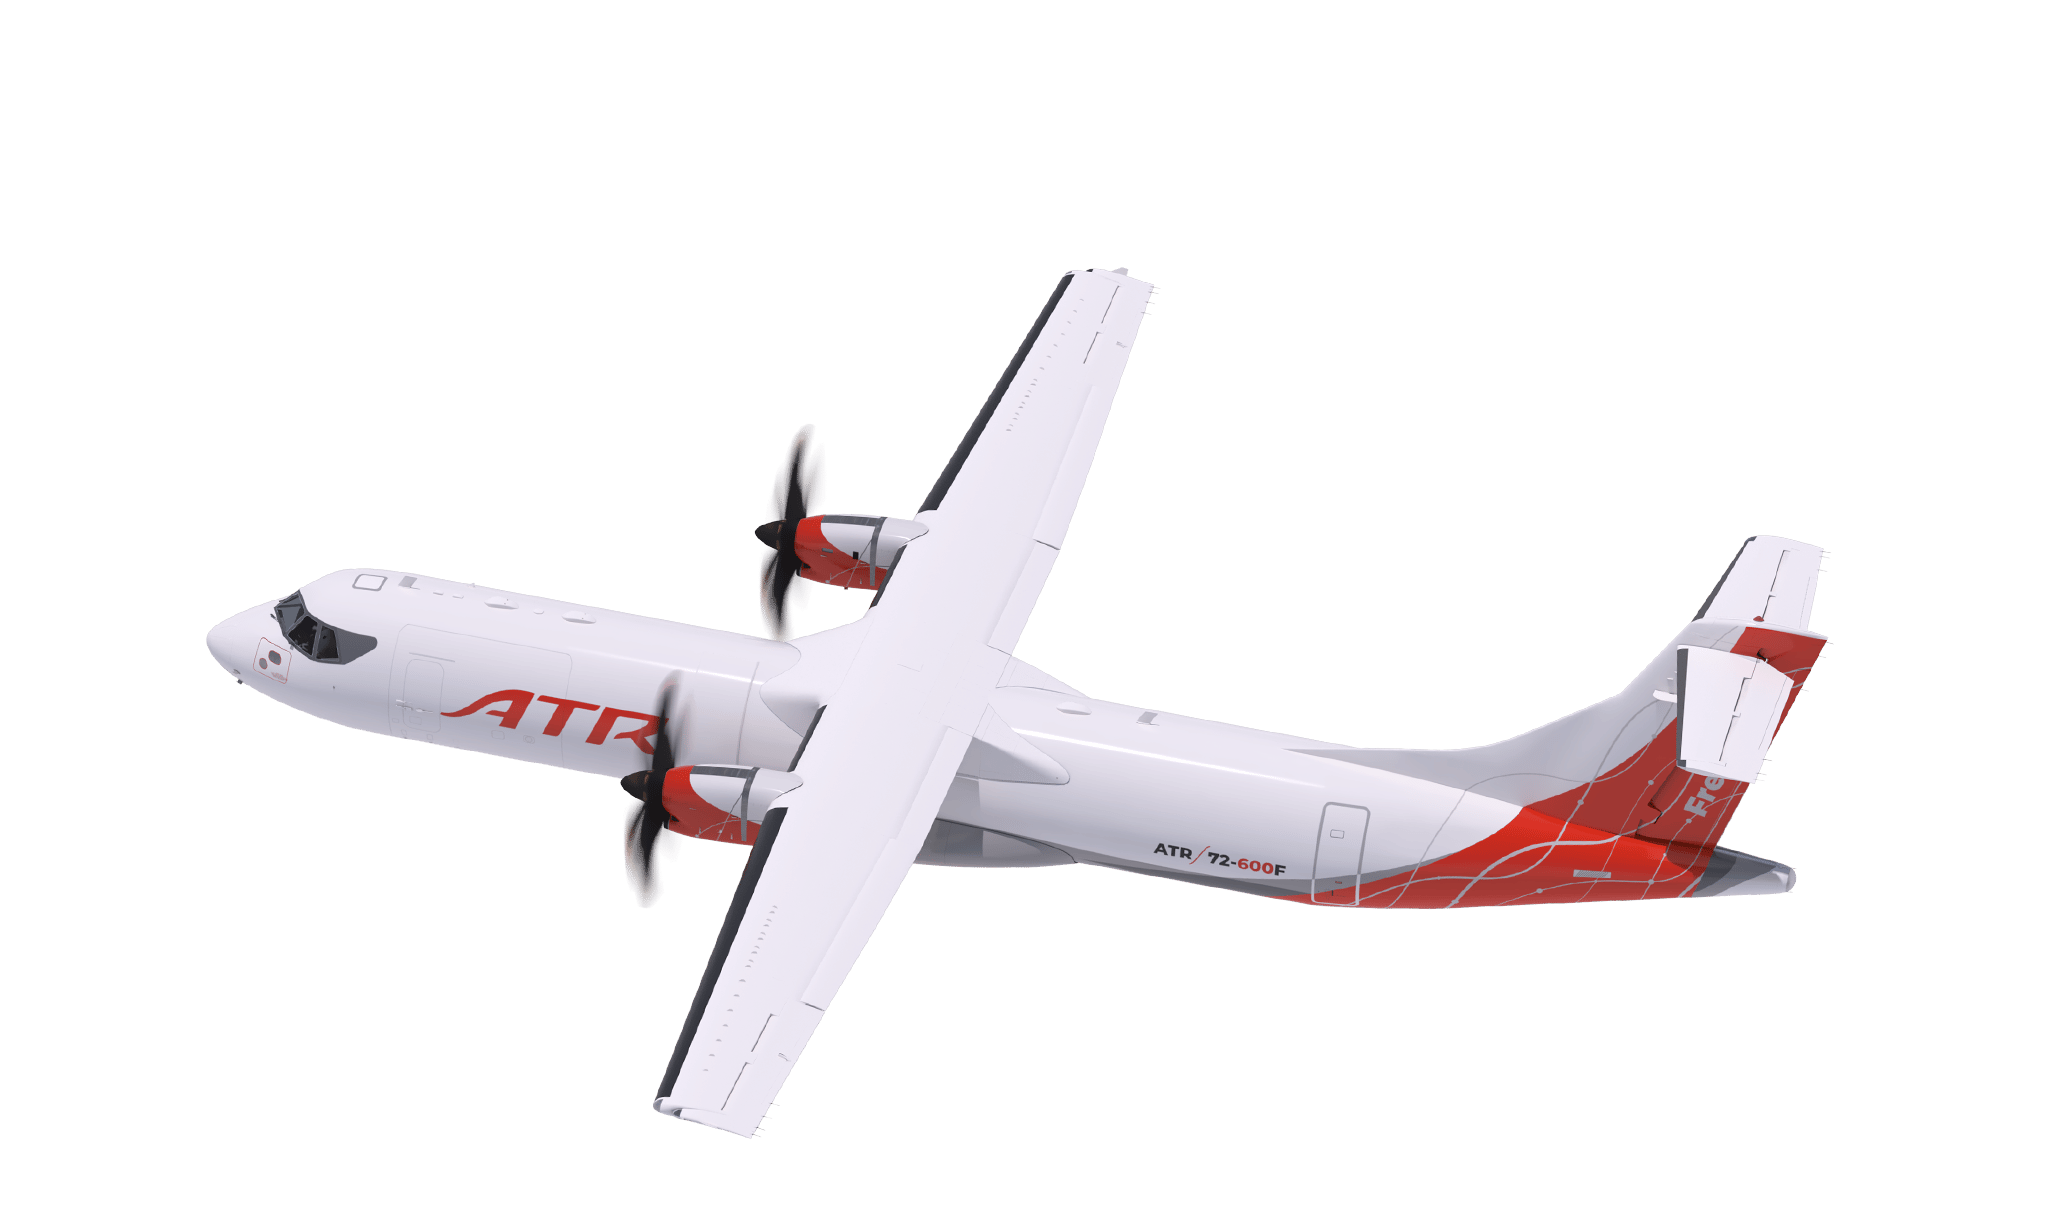 ATR 72-600F turboprop aircraft